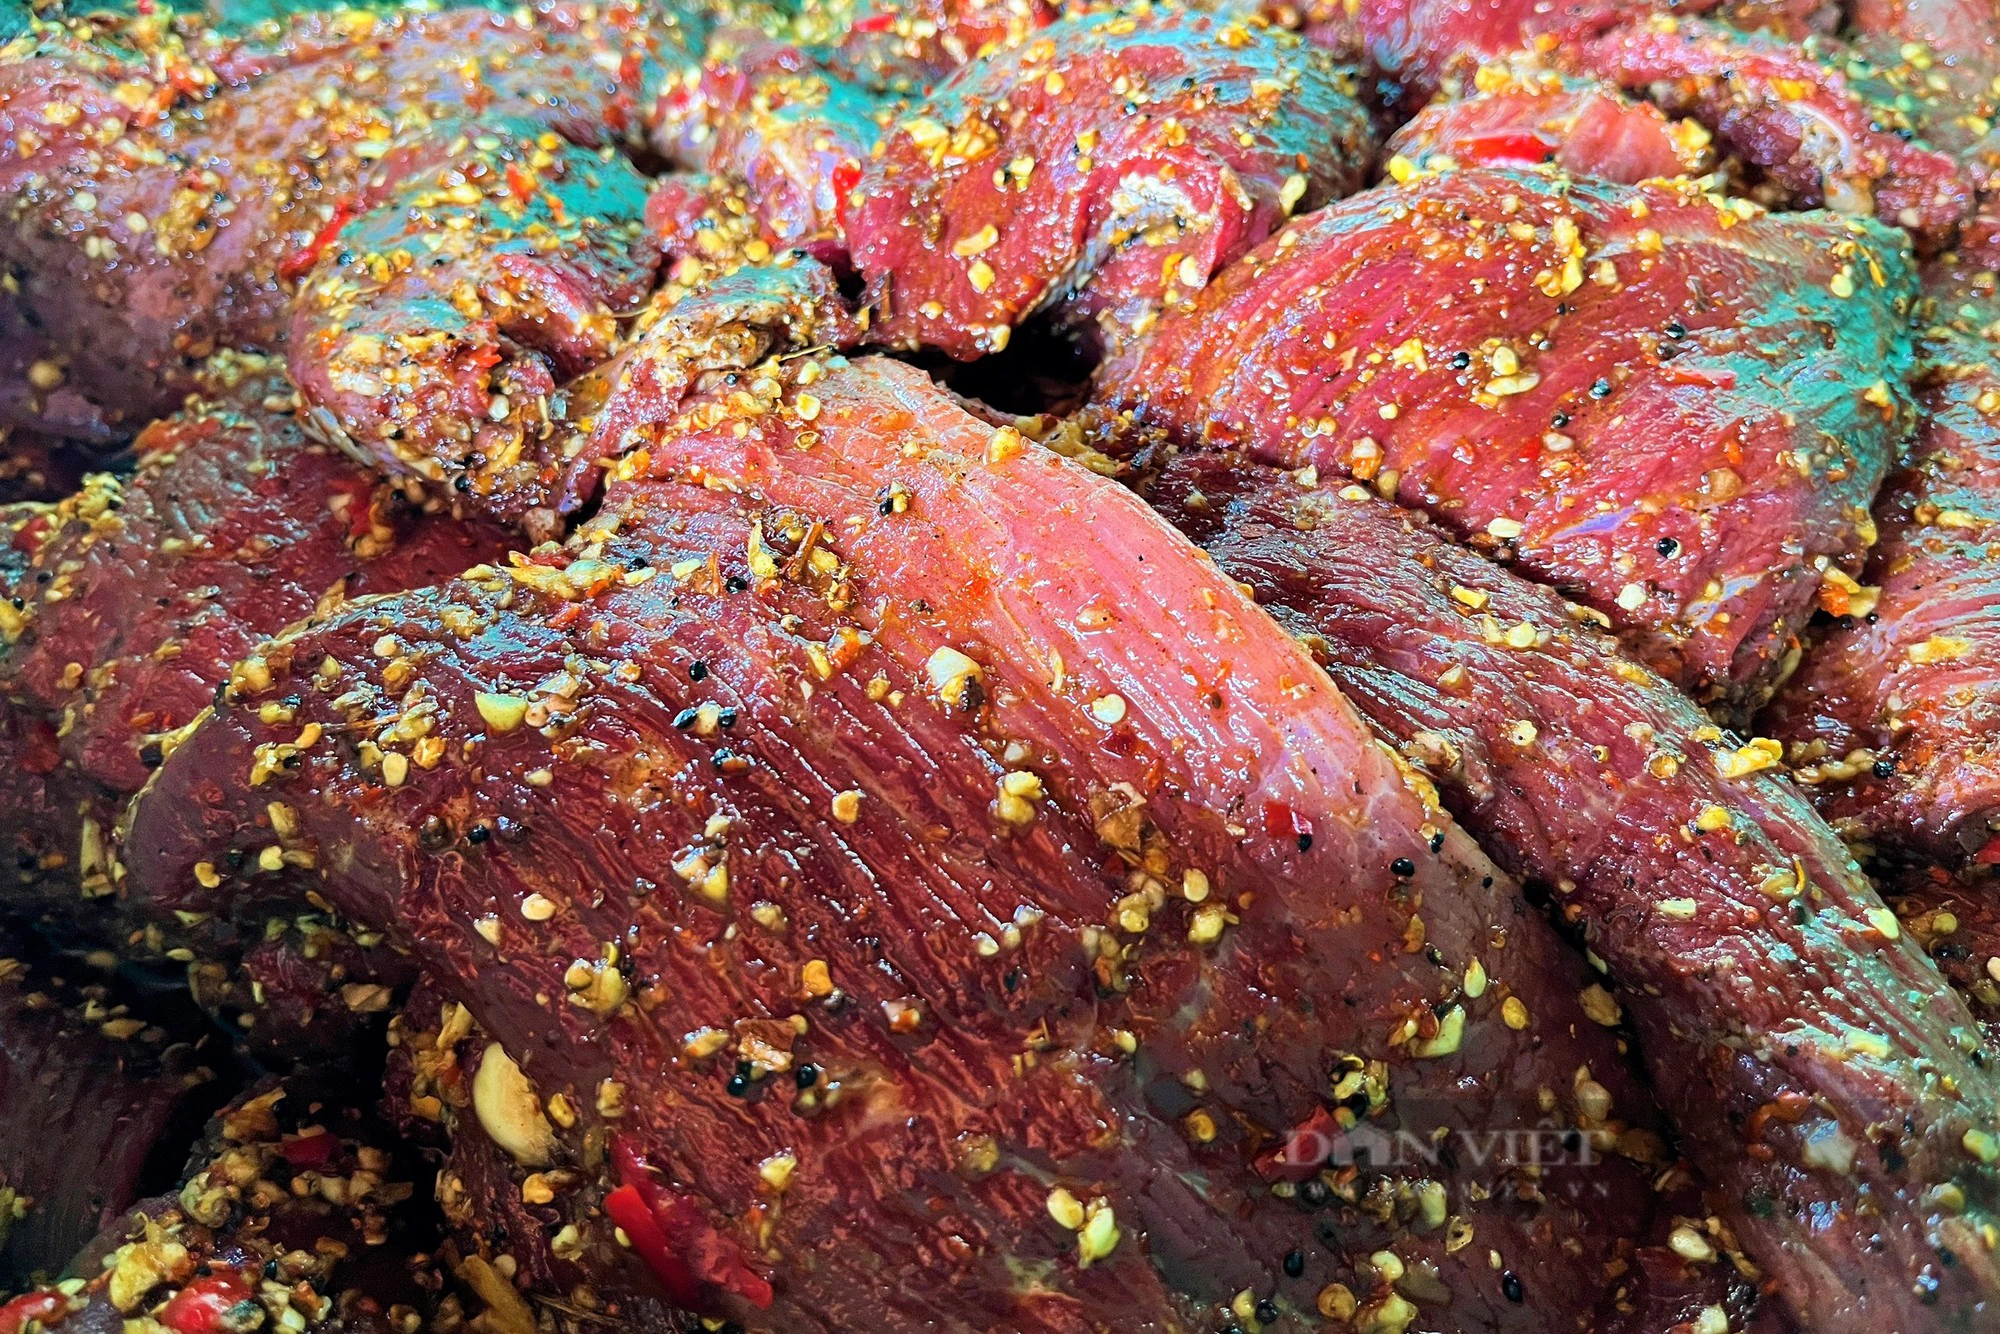 Bò giàng, thịt lợn gác bếp, vố số đặc sản vạn người mê của miền núi Nghệ An xuống phố bán dịp Tết- Ảnh 2.